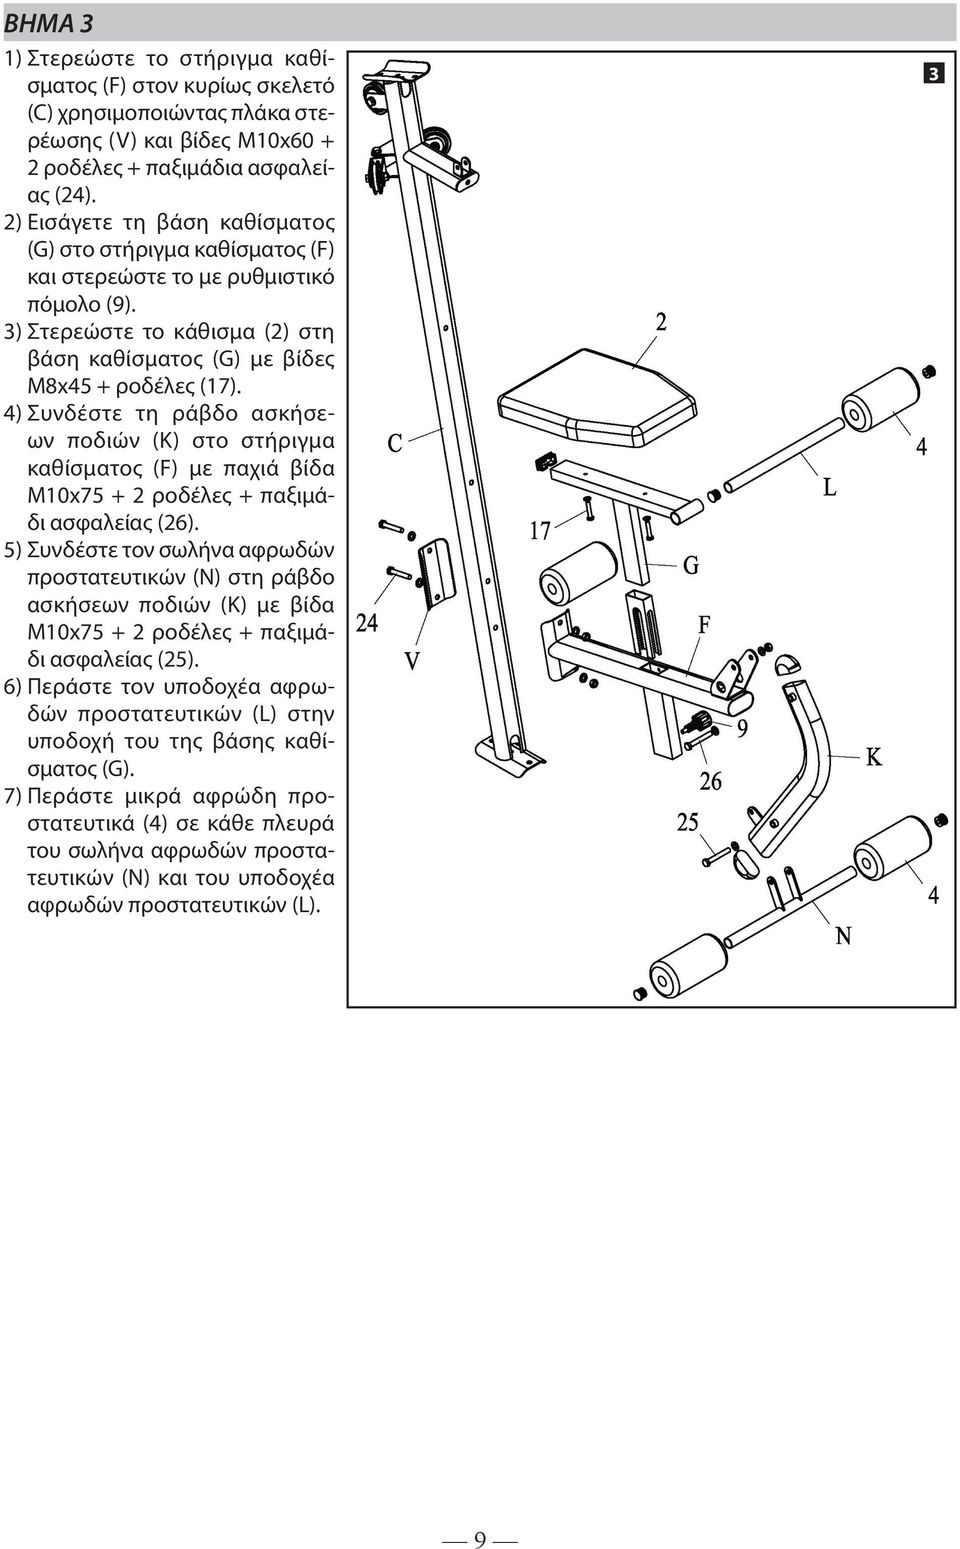 4) Συνδέστε τη ράβδο ασκήσεων ποδιών (Κ) στο στήριγμα καθίσματος (F) με παχιά βίδα M10x75 + 2 ροδέλες (26).